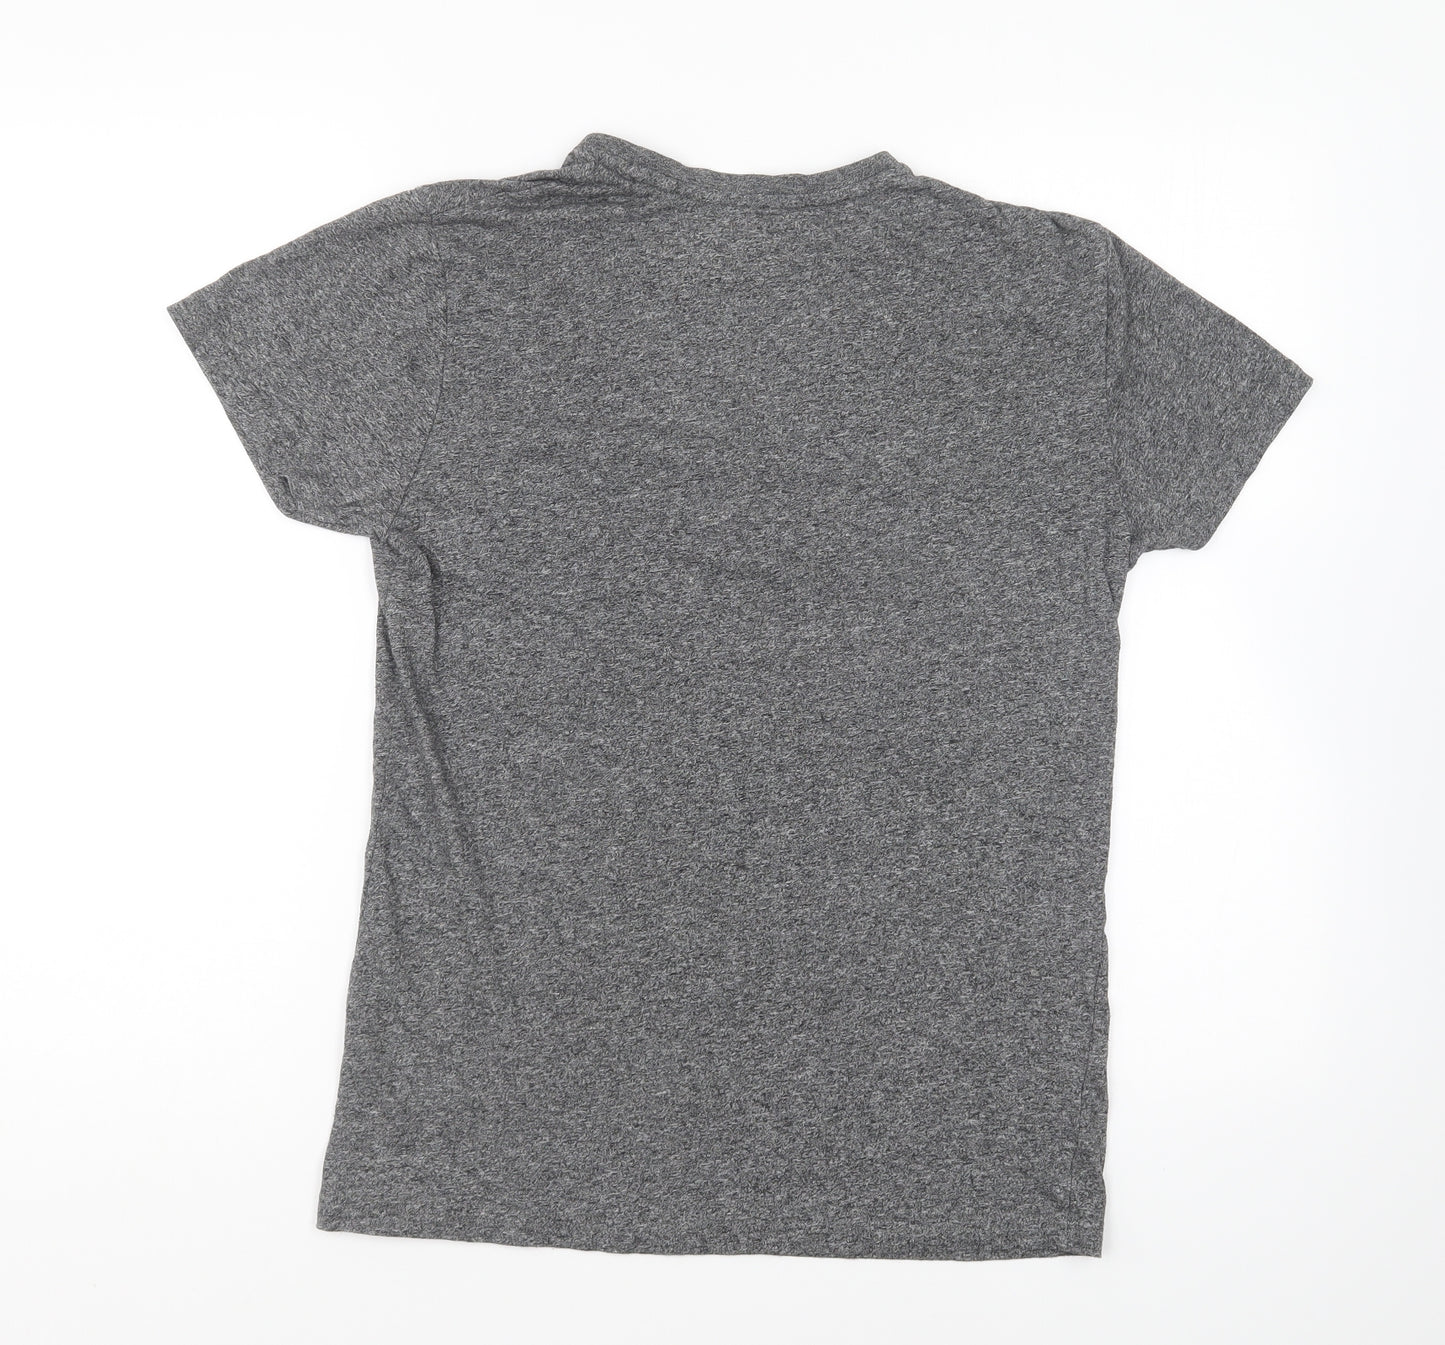 Primark Mens Grey Cotton T-Shirt Size S Round Neck